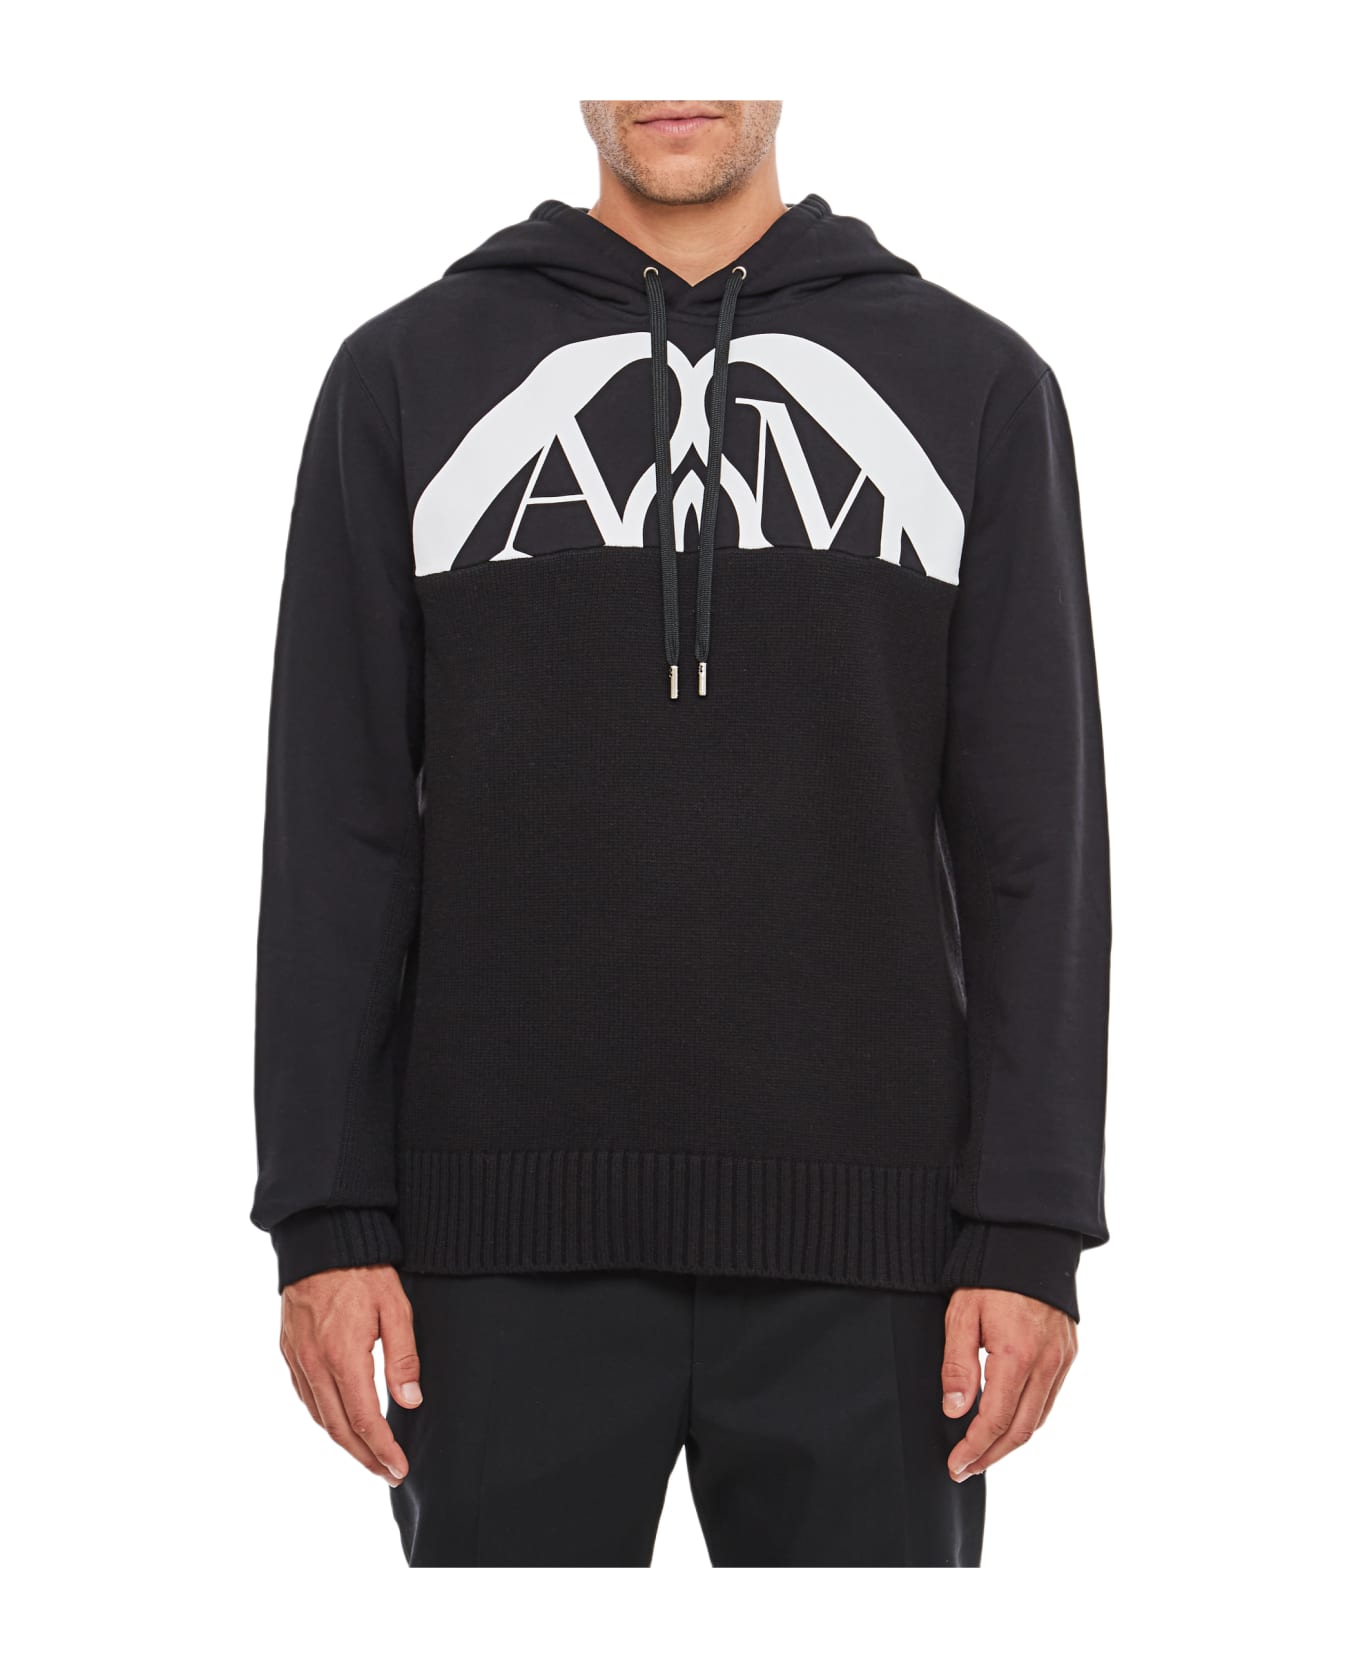 Alexander McQueen Sweatshirt With Logo - Black